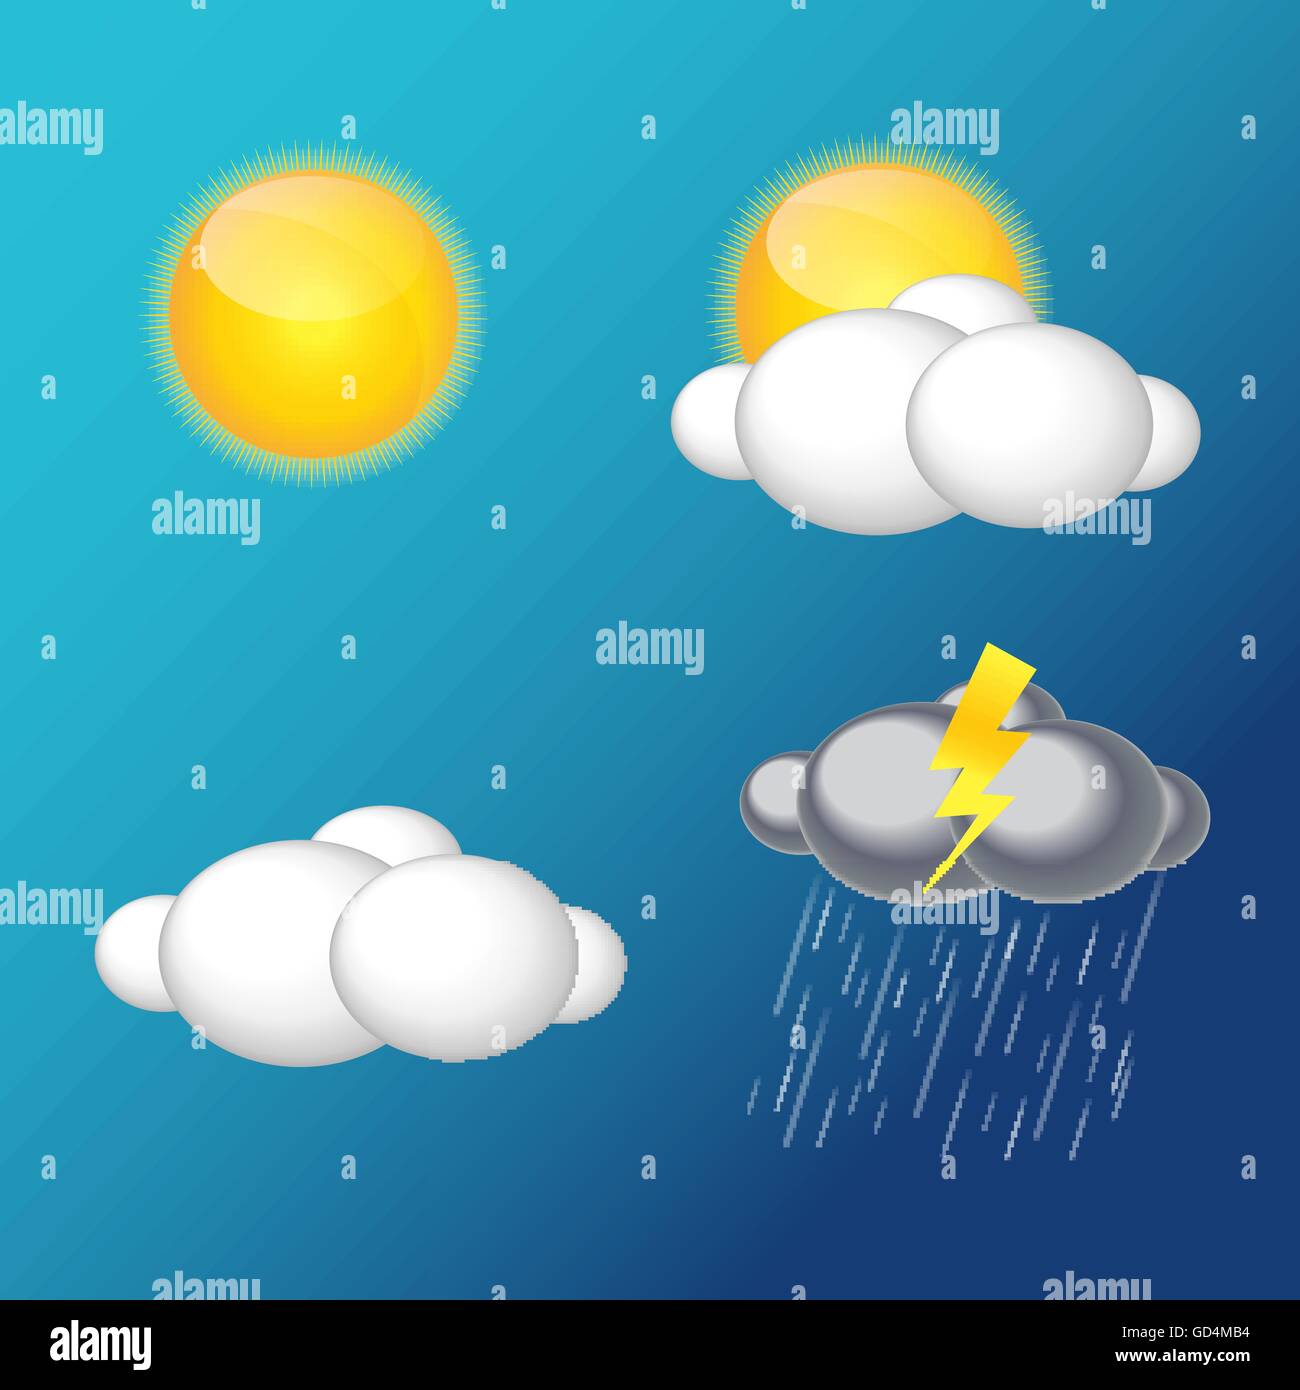 Wetter-Icons mit Sonne, Wolke, Regen-Vektor-Illustration Stock Vektor